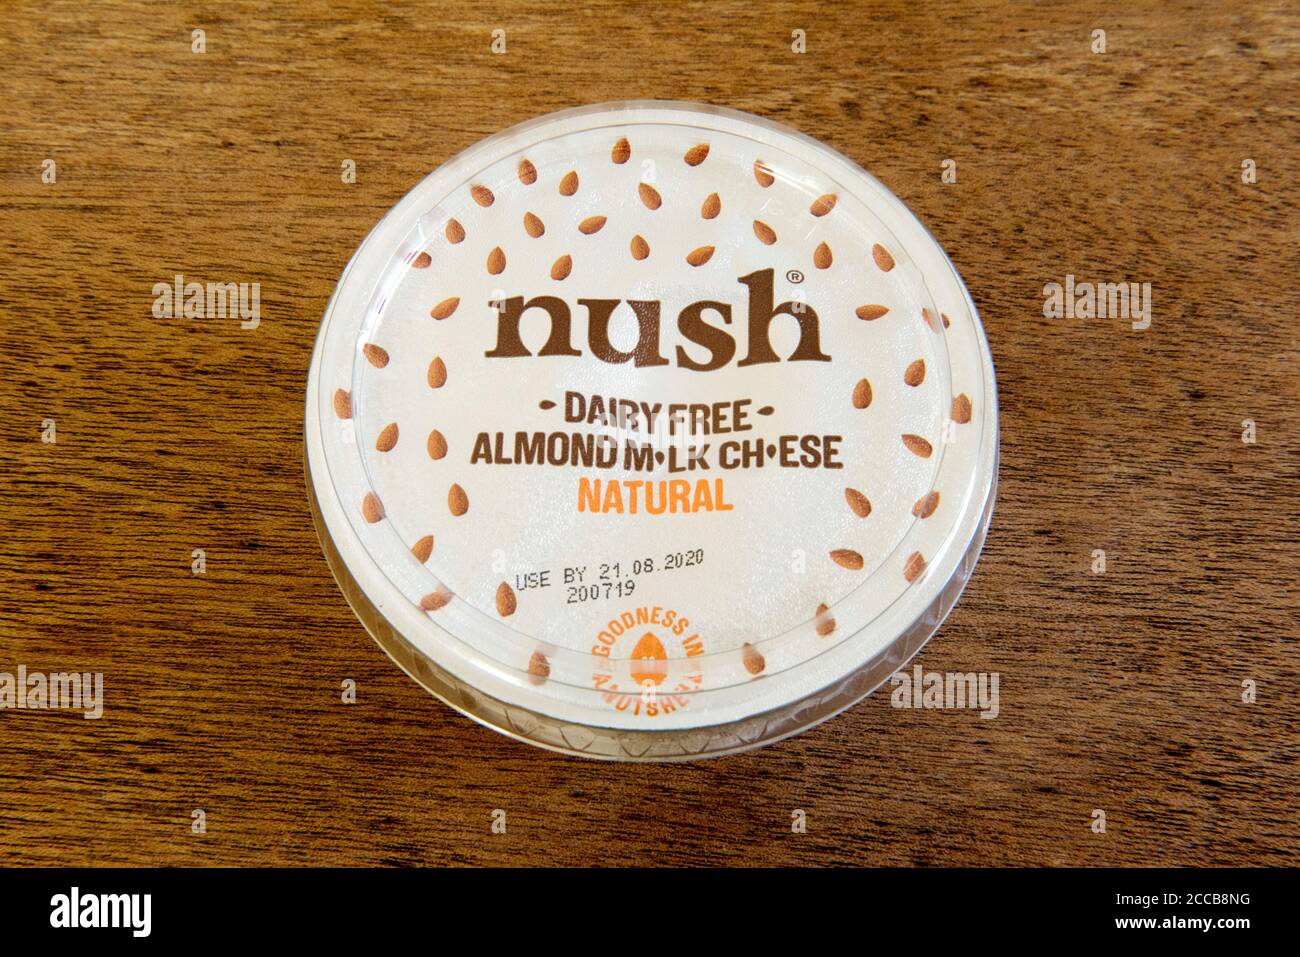 Nush milchfrei Mandelmilch Käse natürlich in der Wanne oder Karton auf Holzbackground Stockfoto